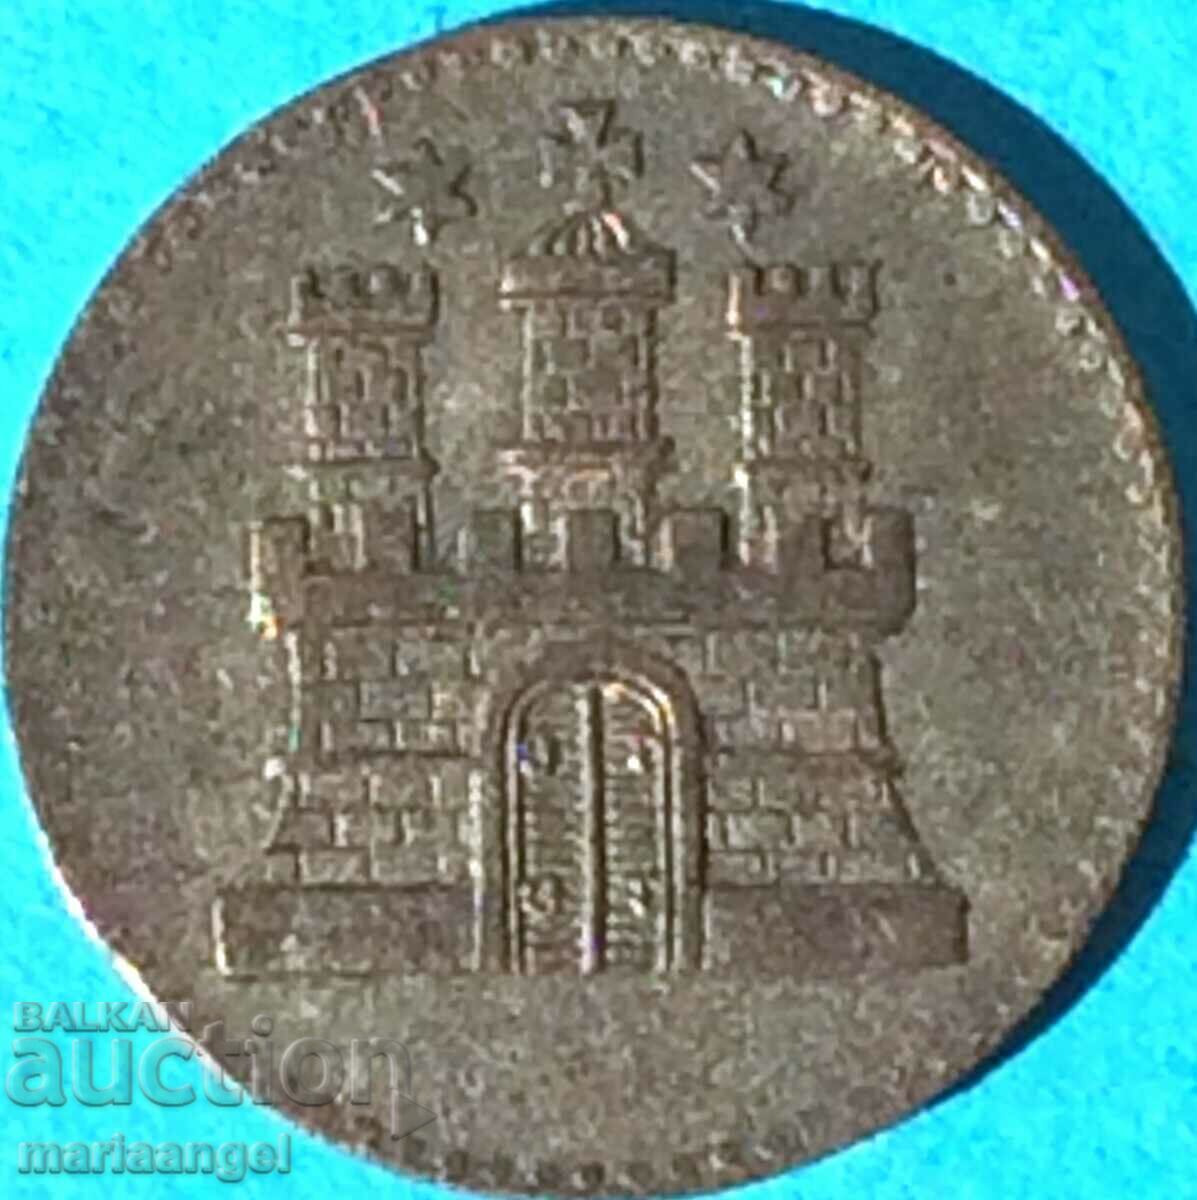 1 ντρέιλινγκ ασήμι 1855 Γερμανίας